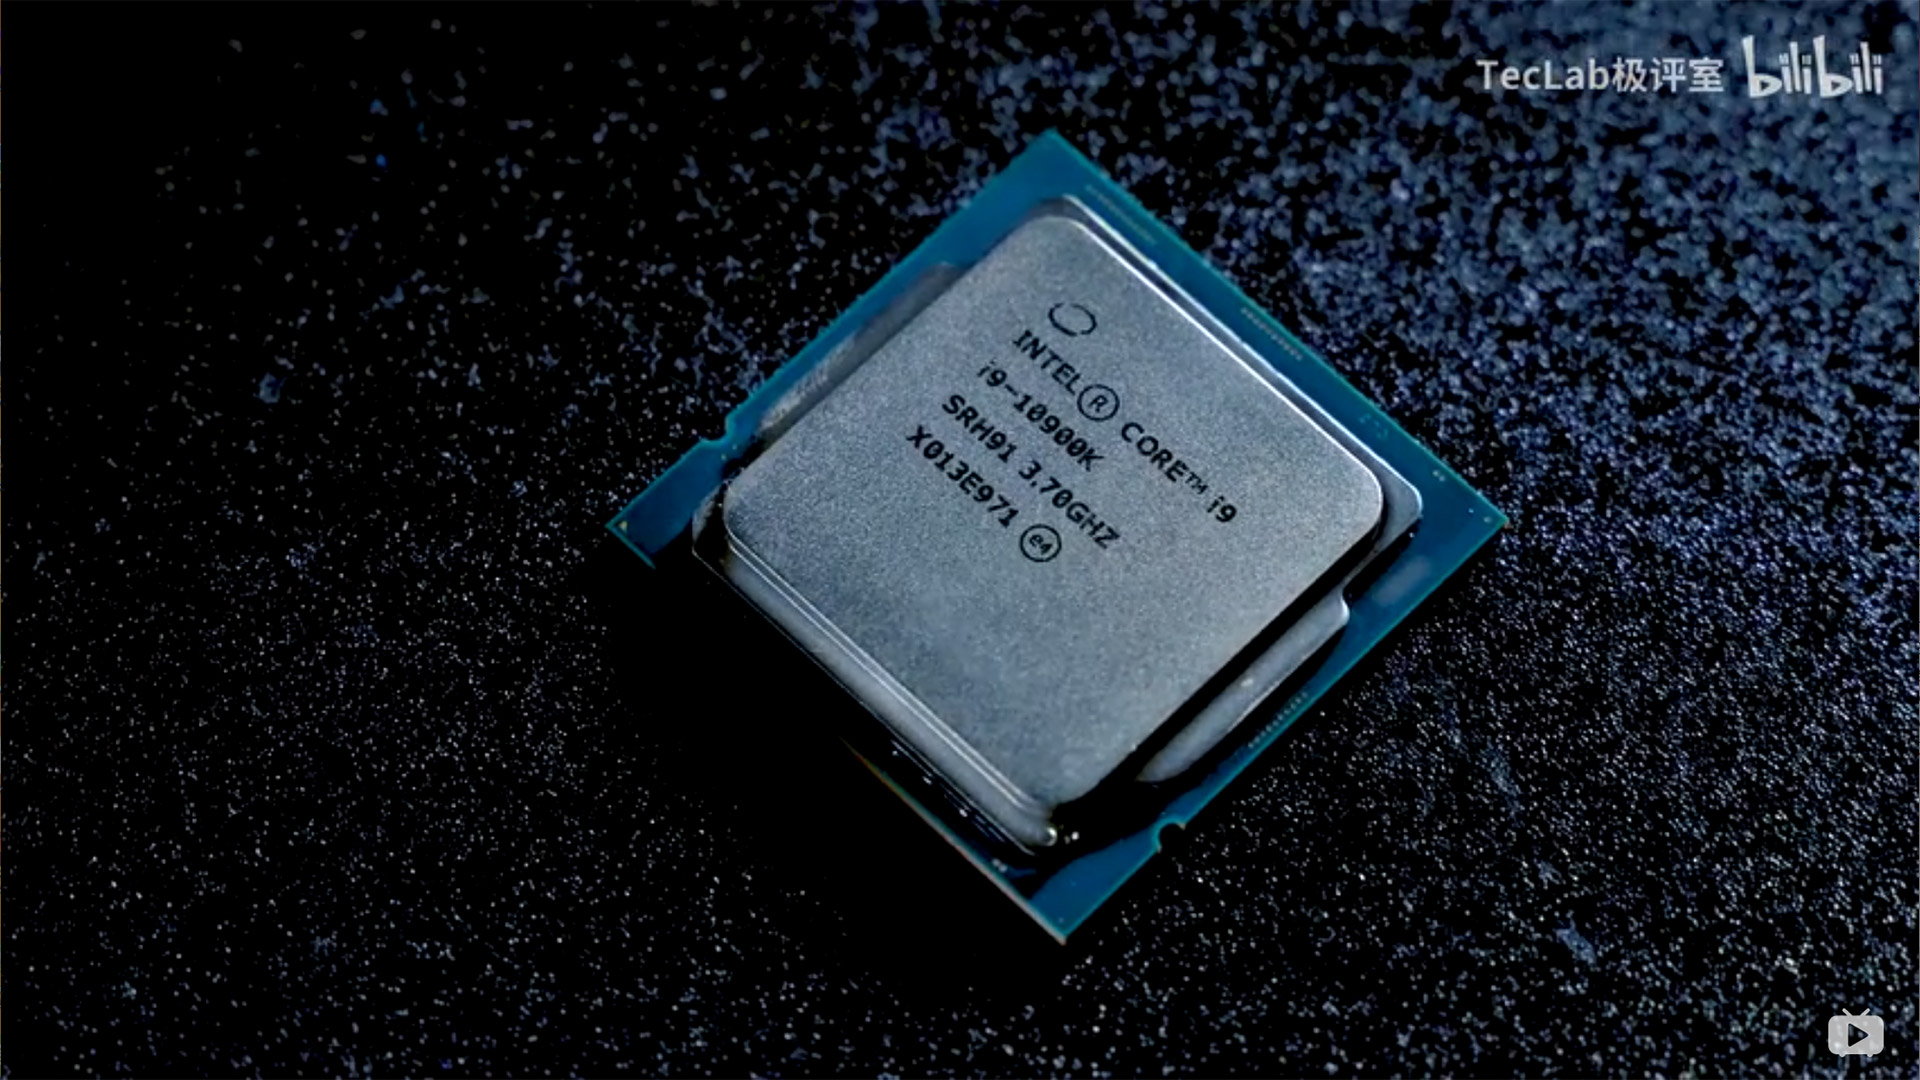  Intel Core i9-10900K probatu dute.  Prozesatzaile urdin azkarrena vs Ryzena 9 3900X eta 3950X
